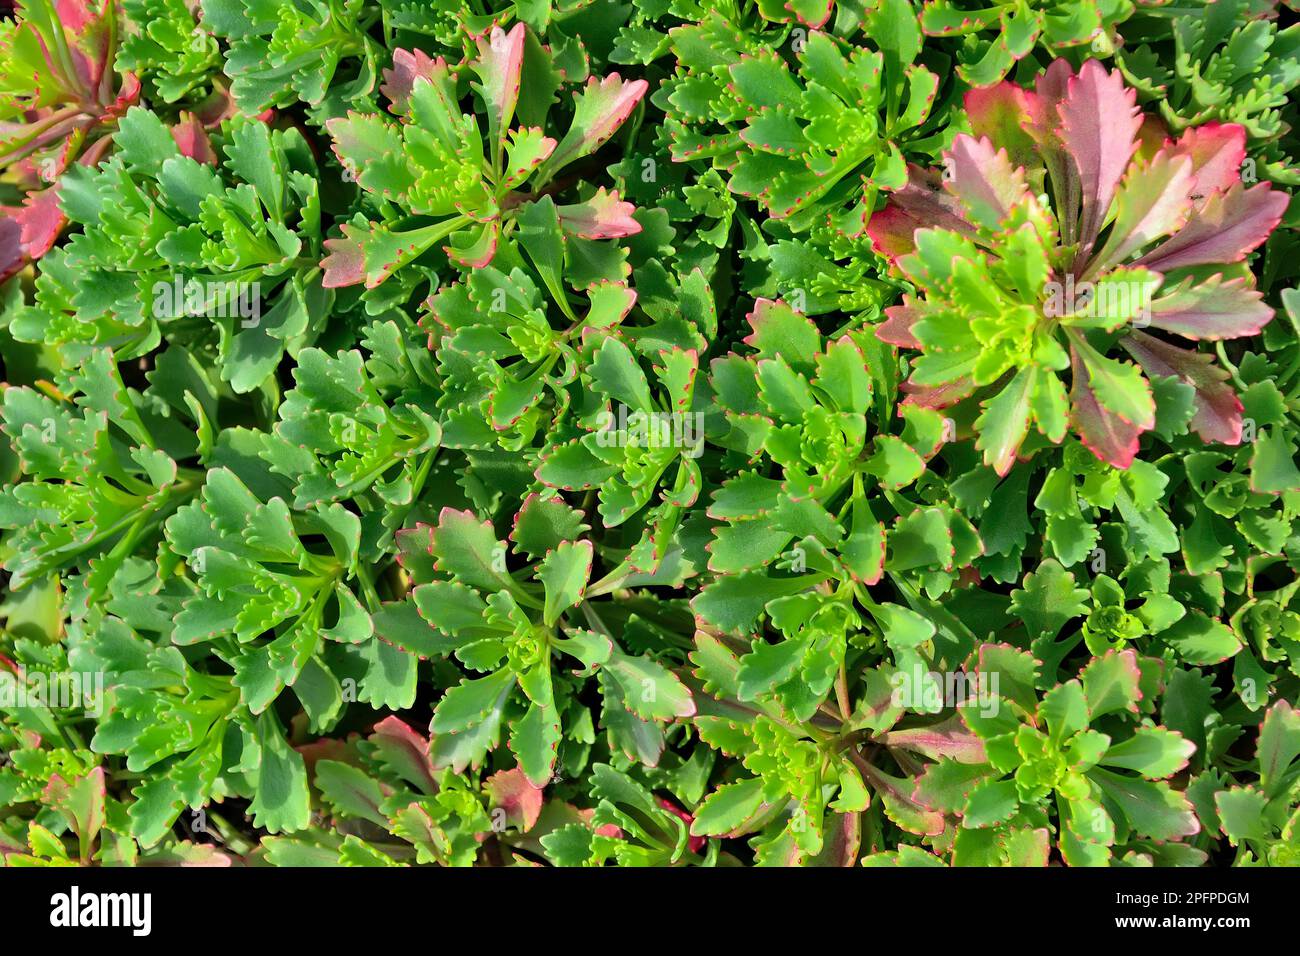 Beau tapis de grès (Sedum midendorfianum) - plante ornementale, succulente avec des feuilles dentelées et des bords rouges de feuilles charnues. Pince décorative Banque D'Images